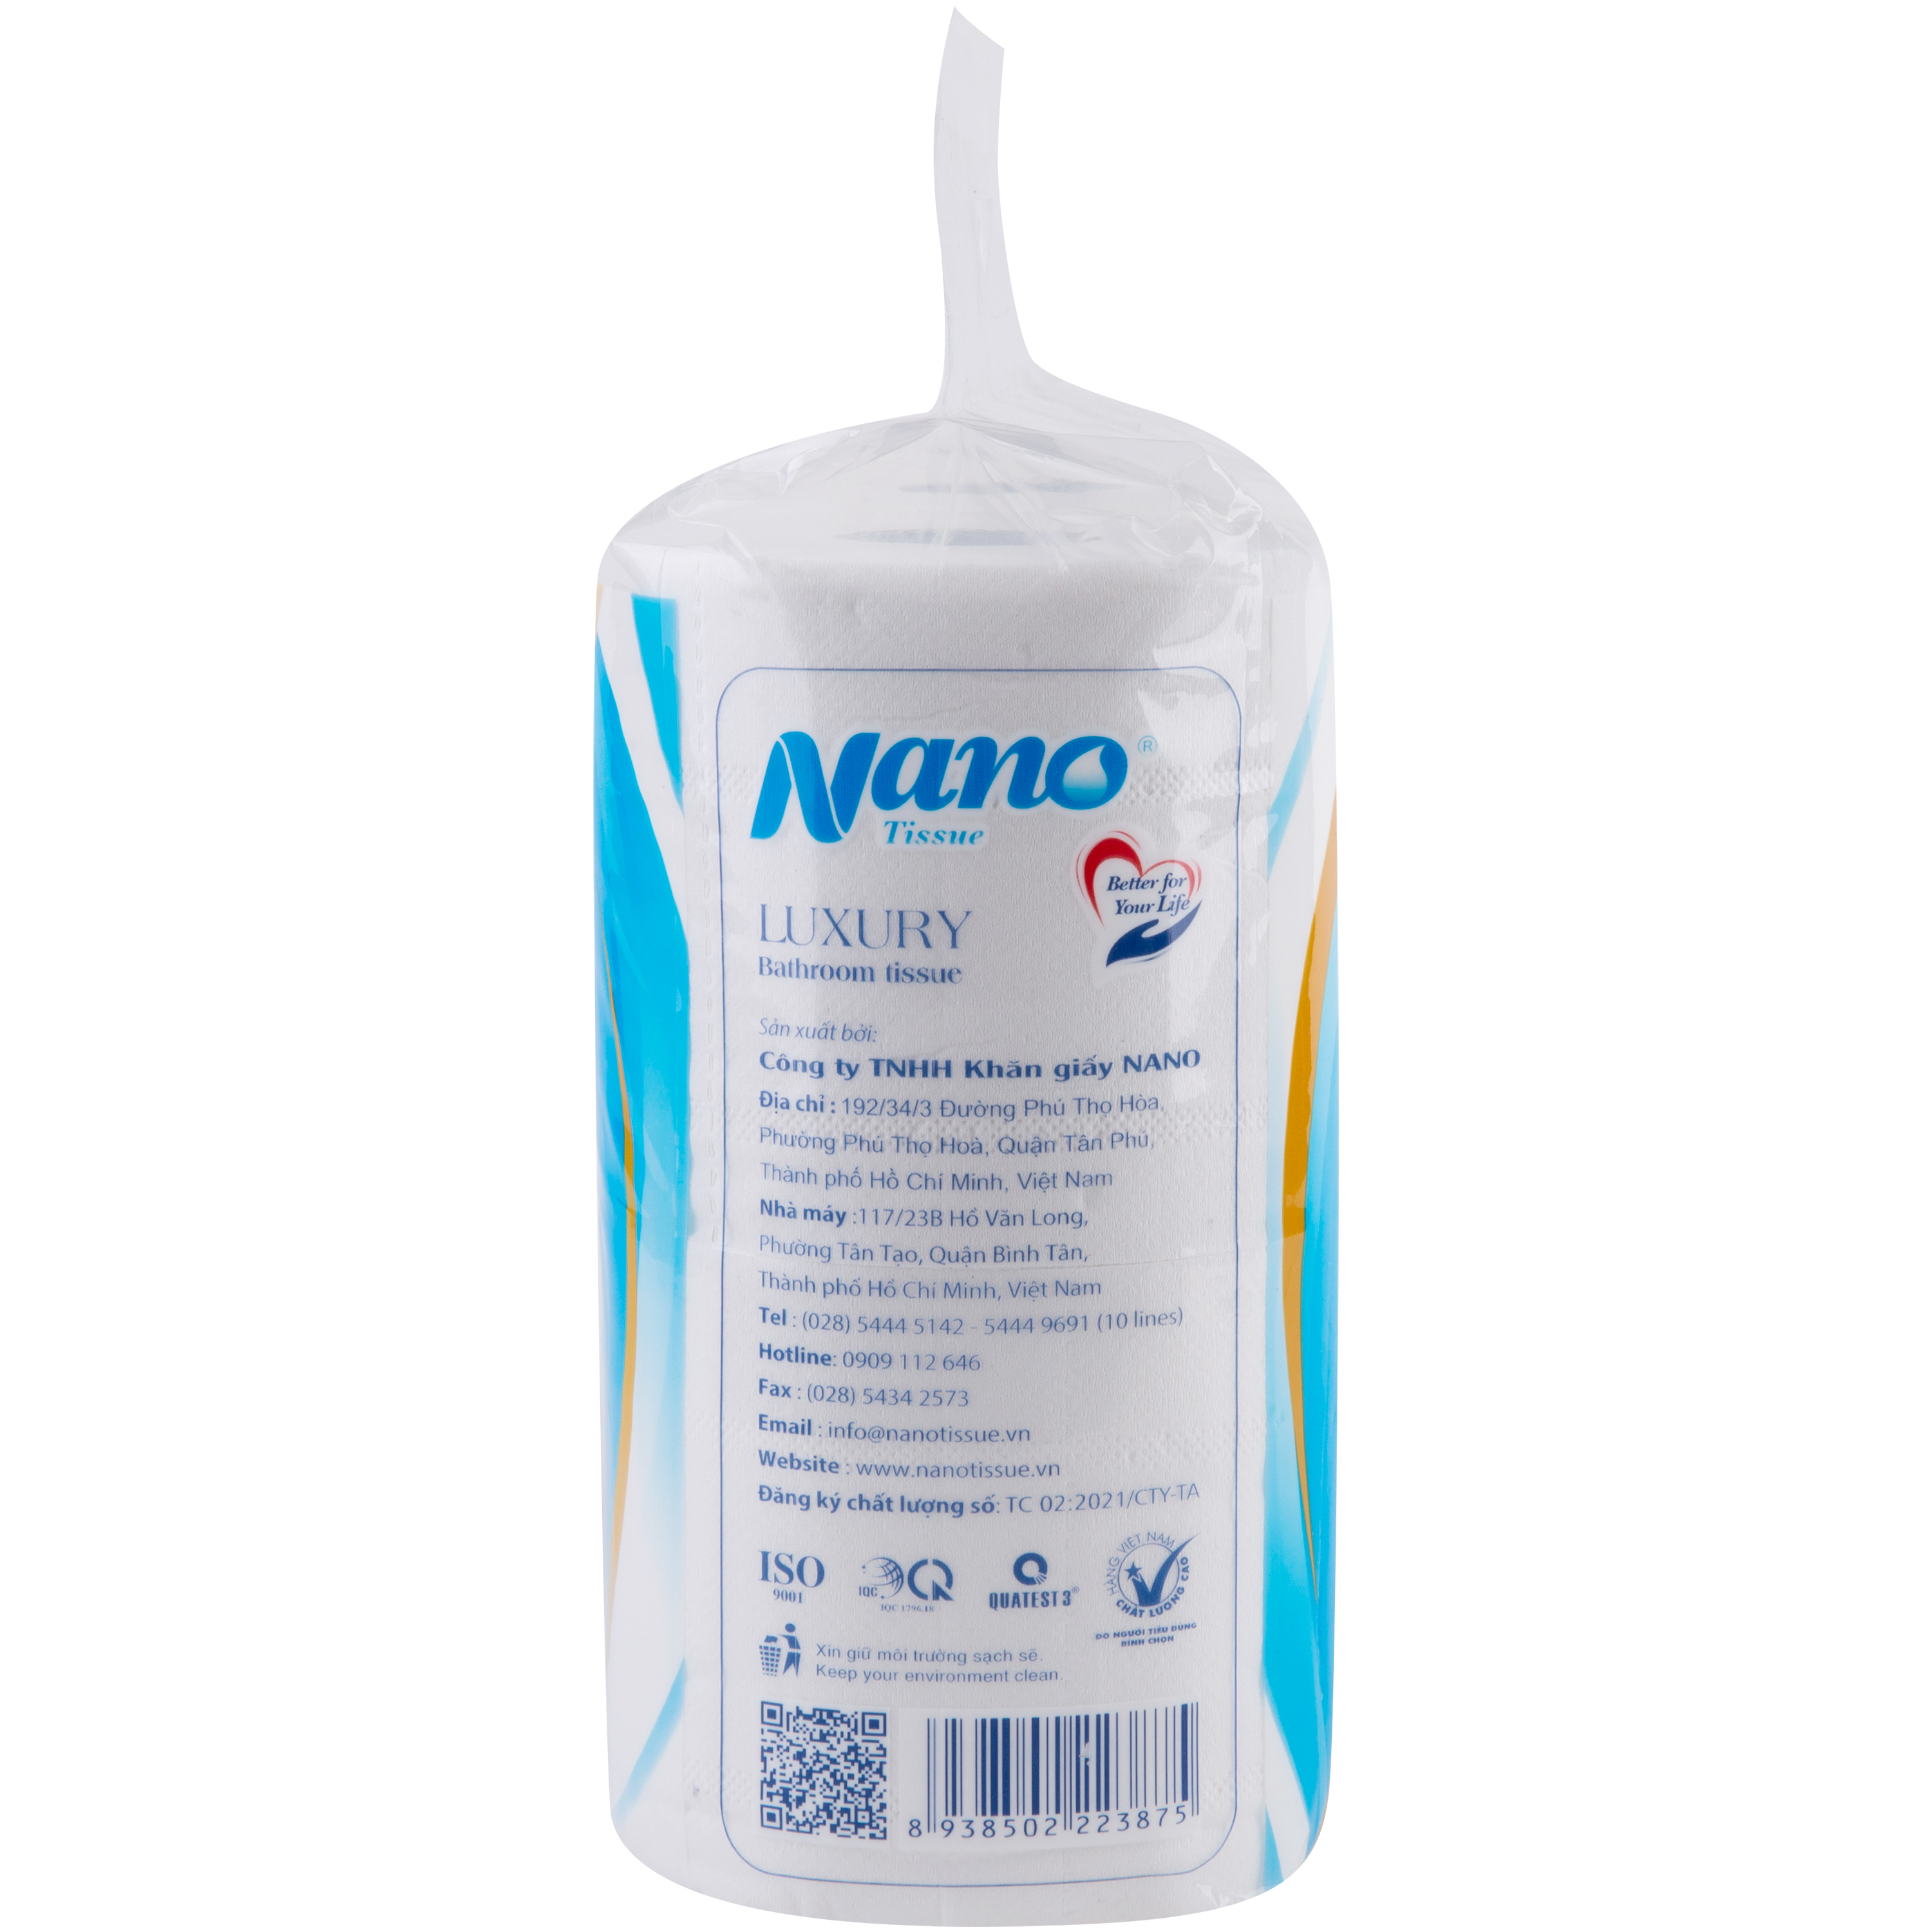 Giấy vệ sinh Nano 6 cuộn có lõi, giấy 3 lớp dày dặn tiết kiệm, an toàn khi sử dụng - Nano Tissue